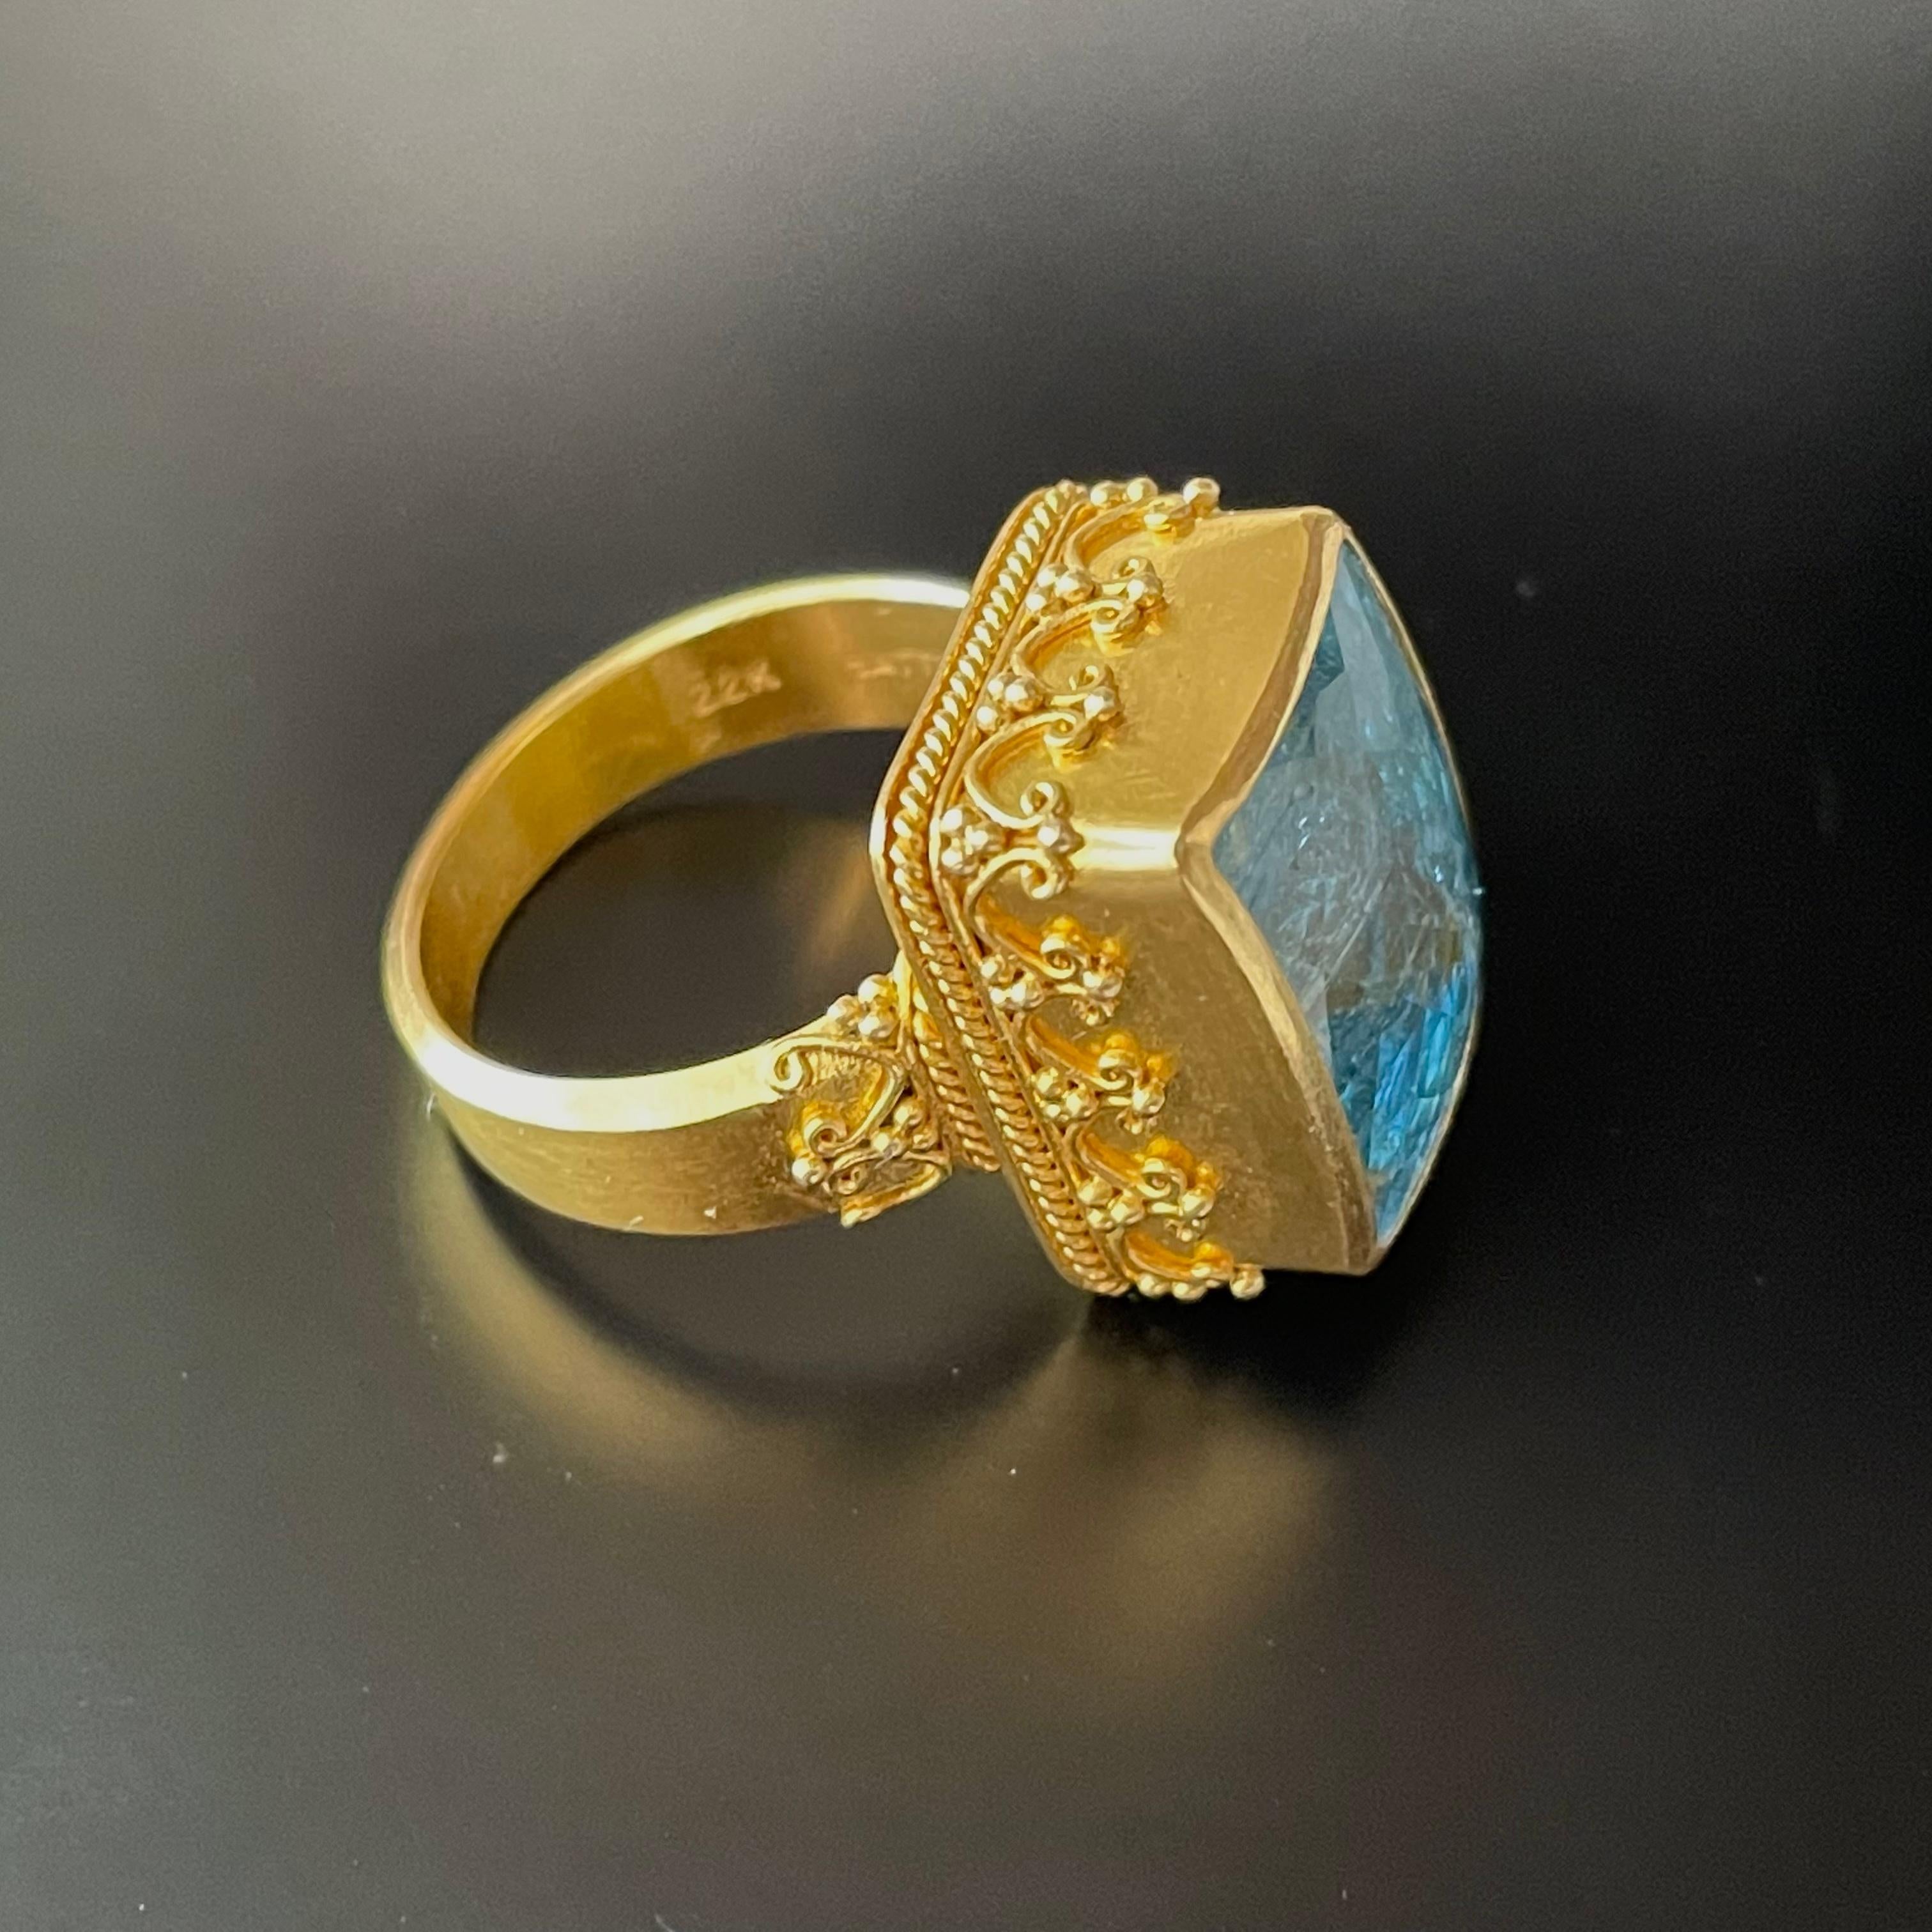 Steven Battelle 11.5 Carats Rectangular Aquamarine Handmade 22K Gold Ring For Sale 1